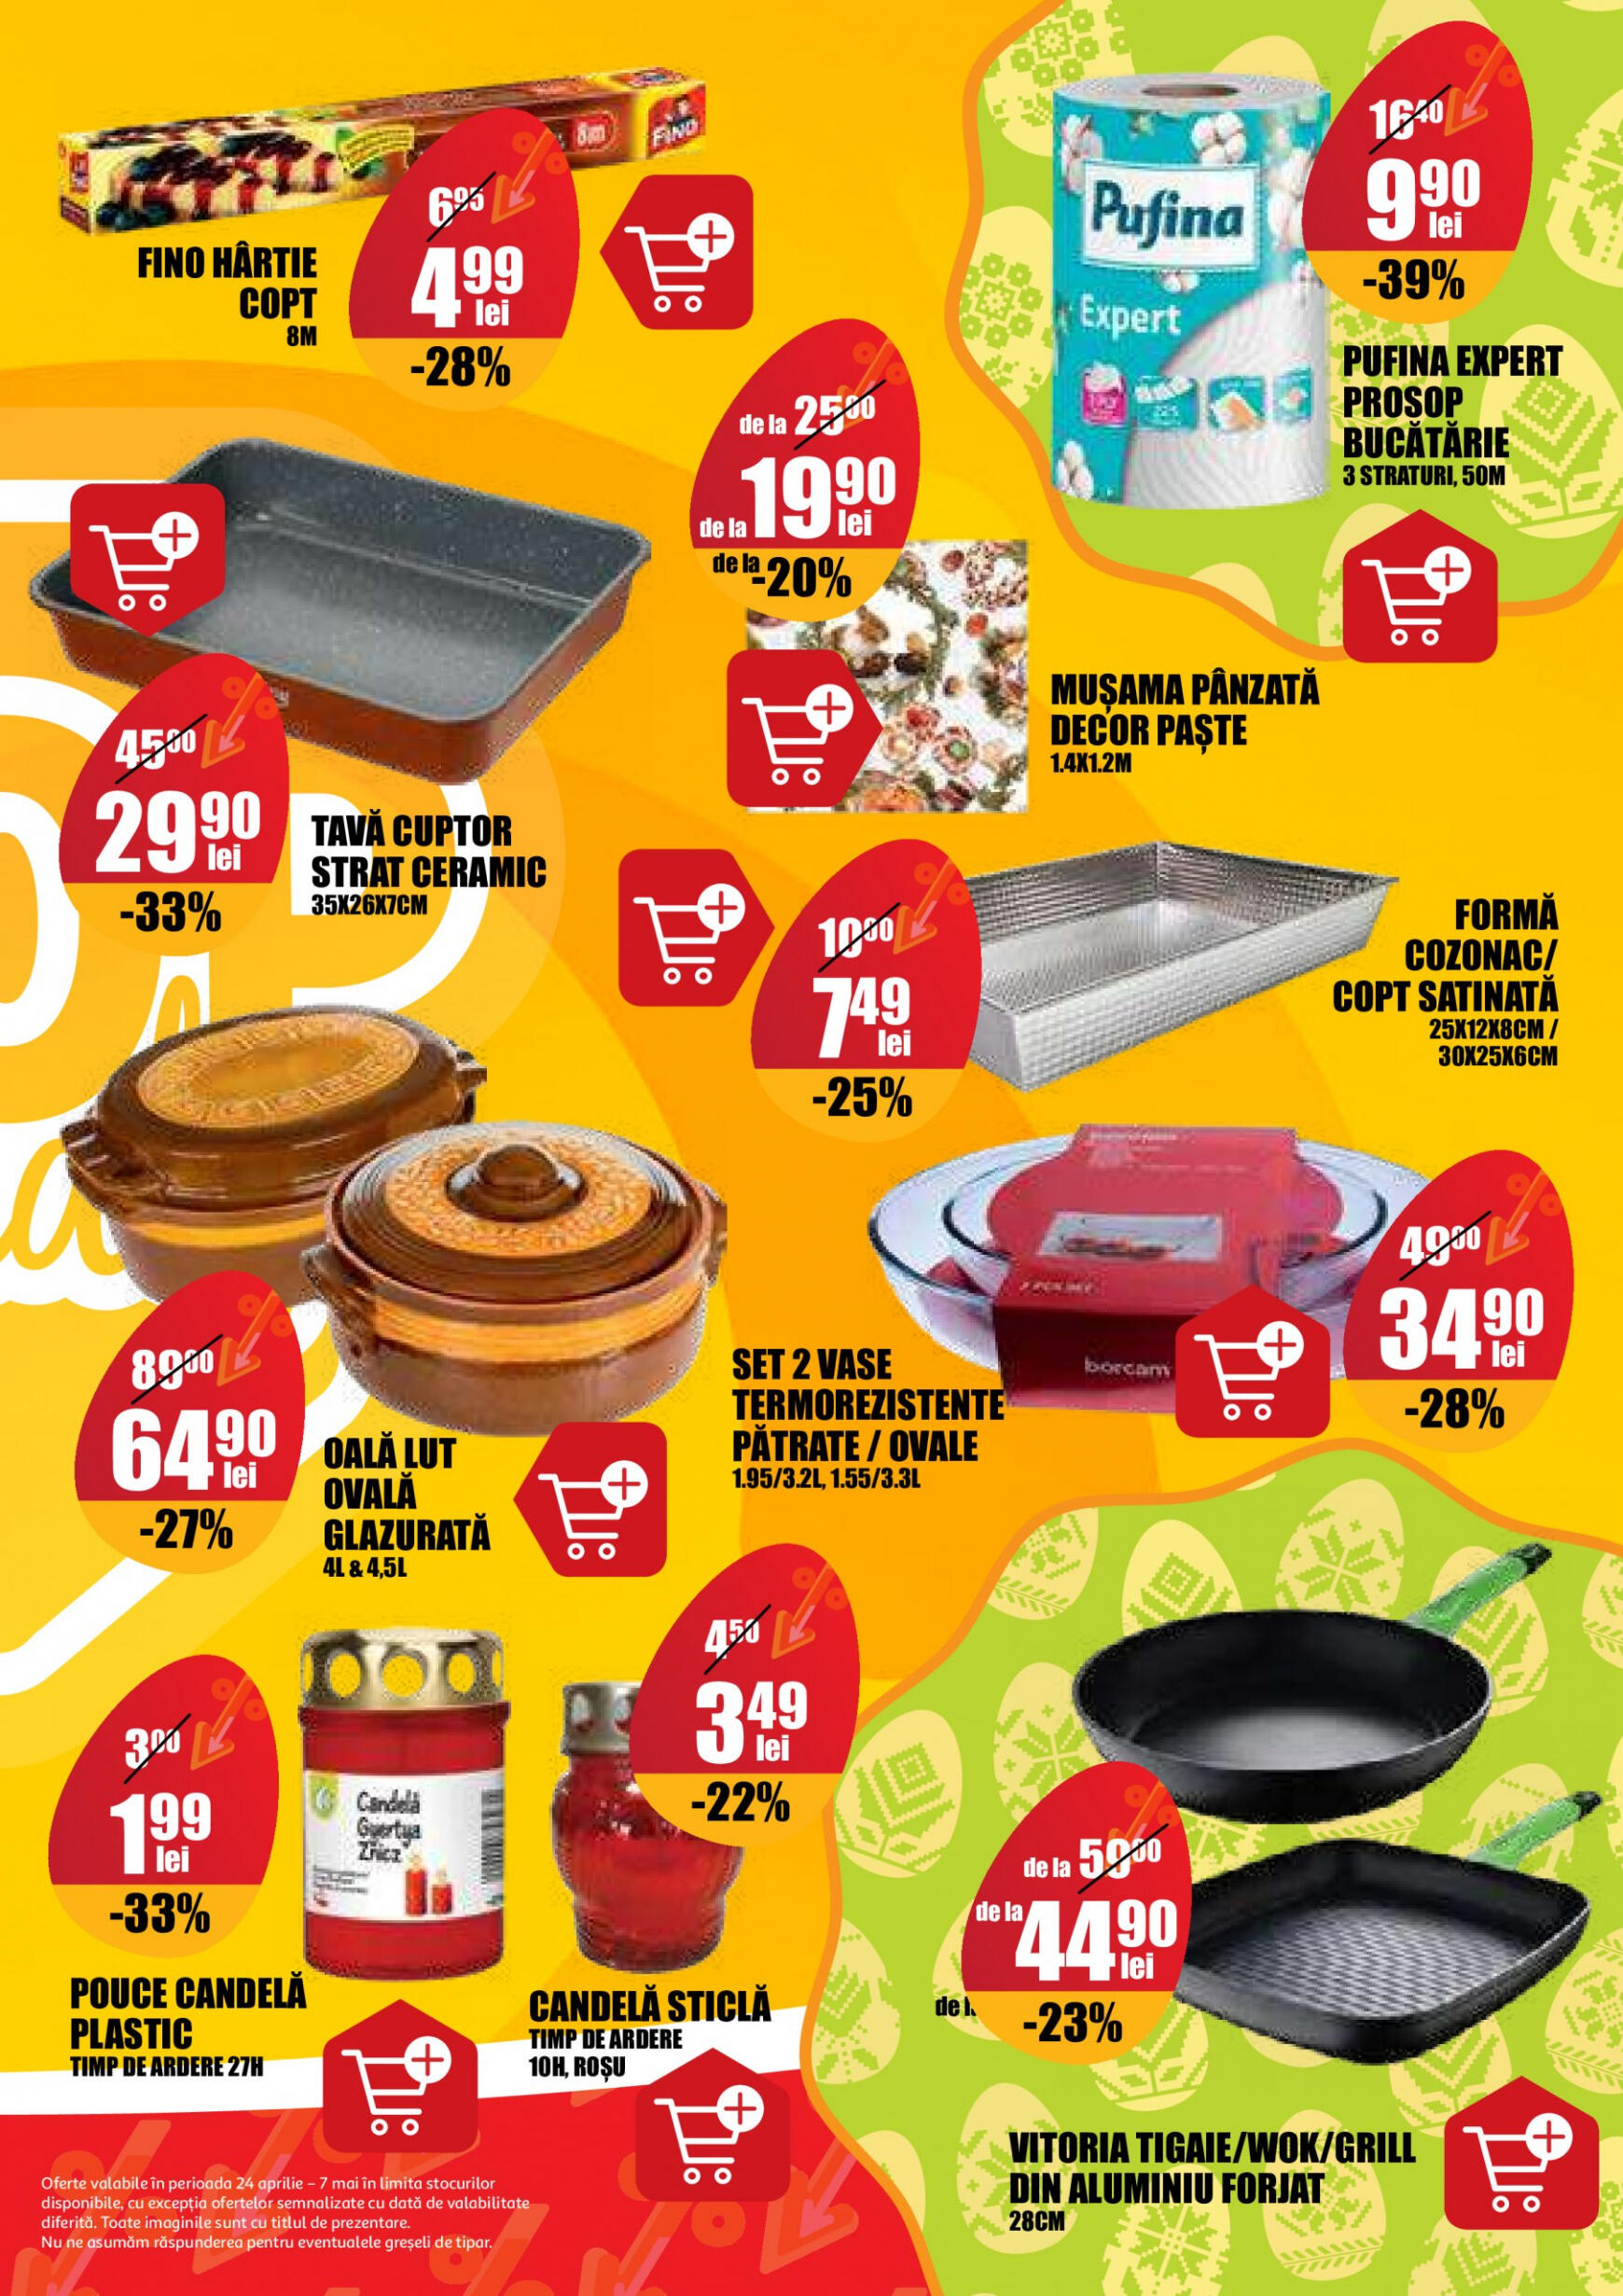 auchan - Catalog nou Auchan 24.04. - 07.05. - page: 25